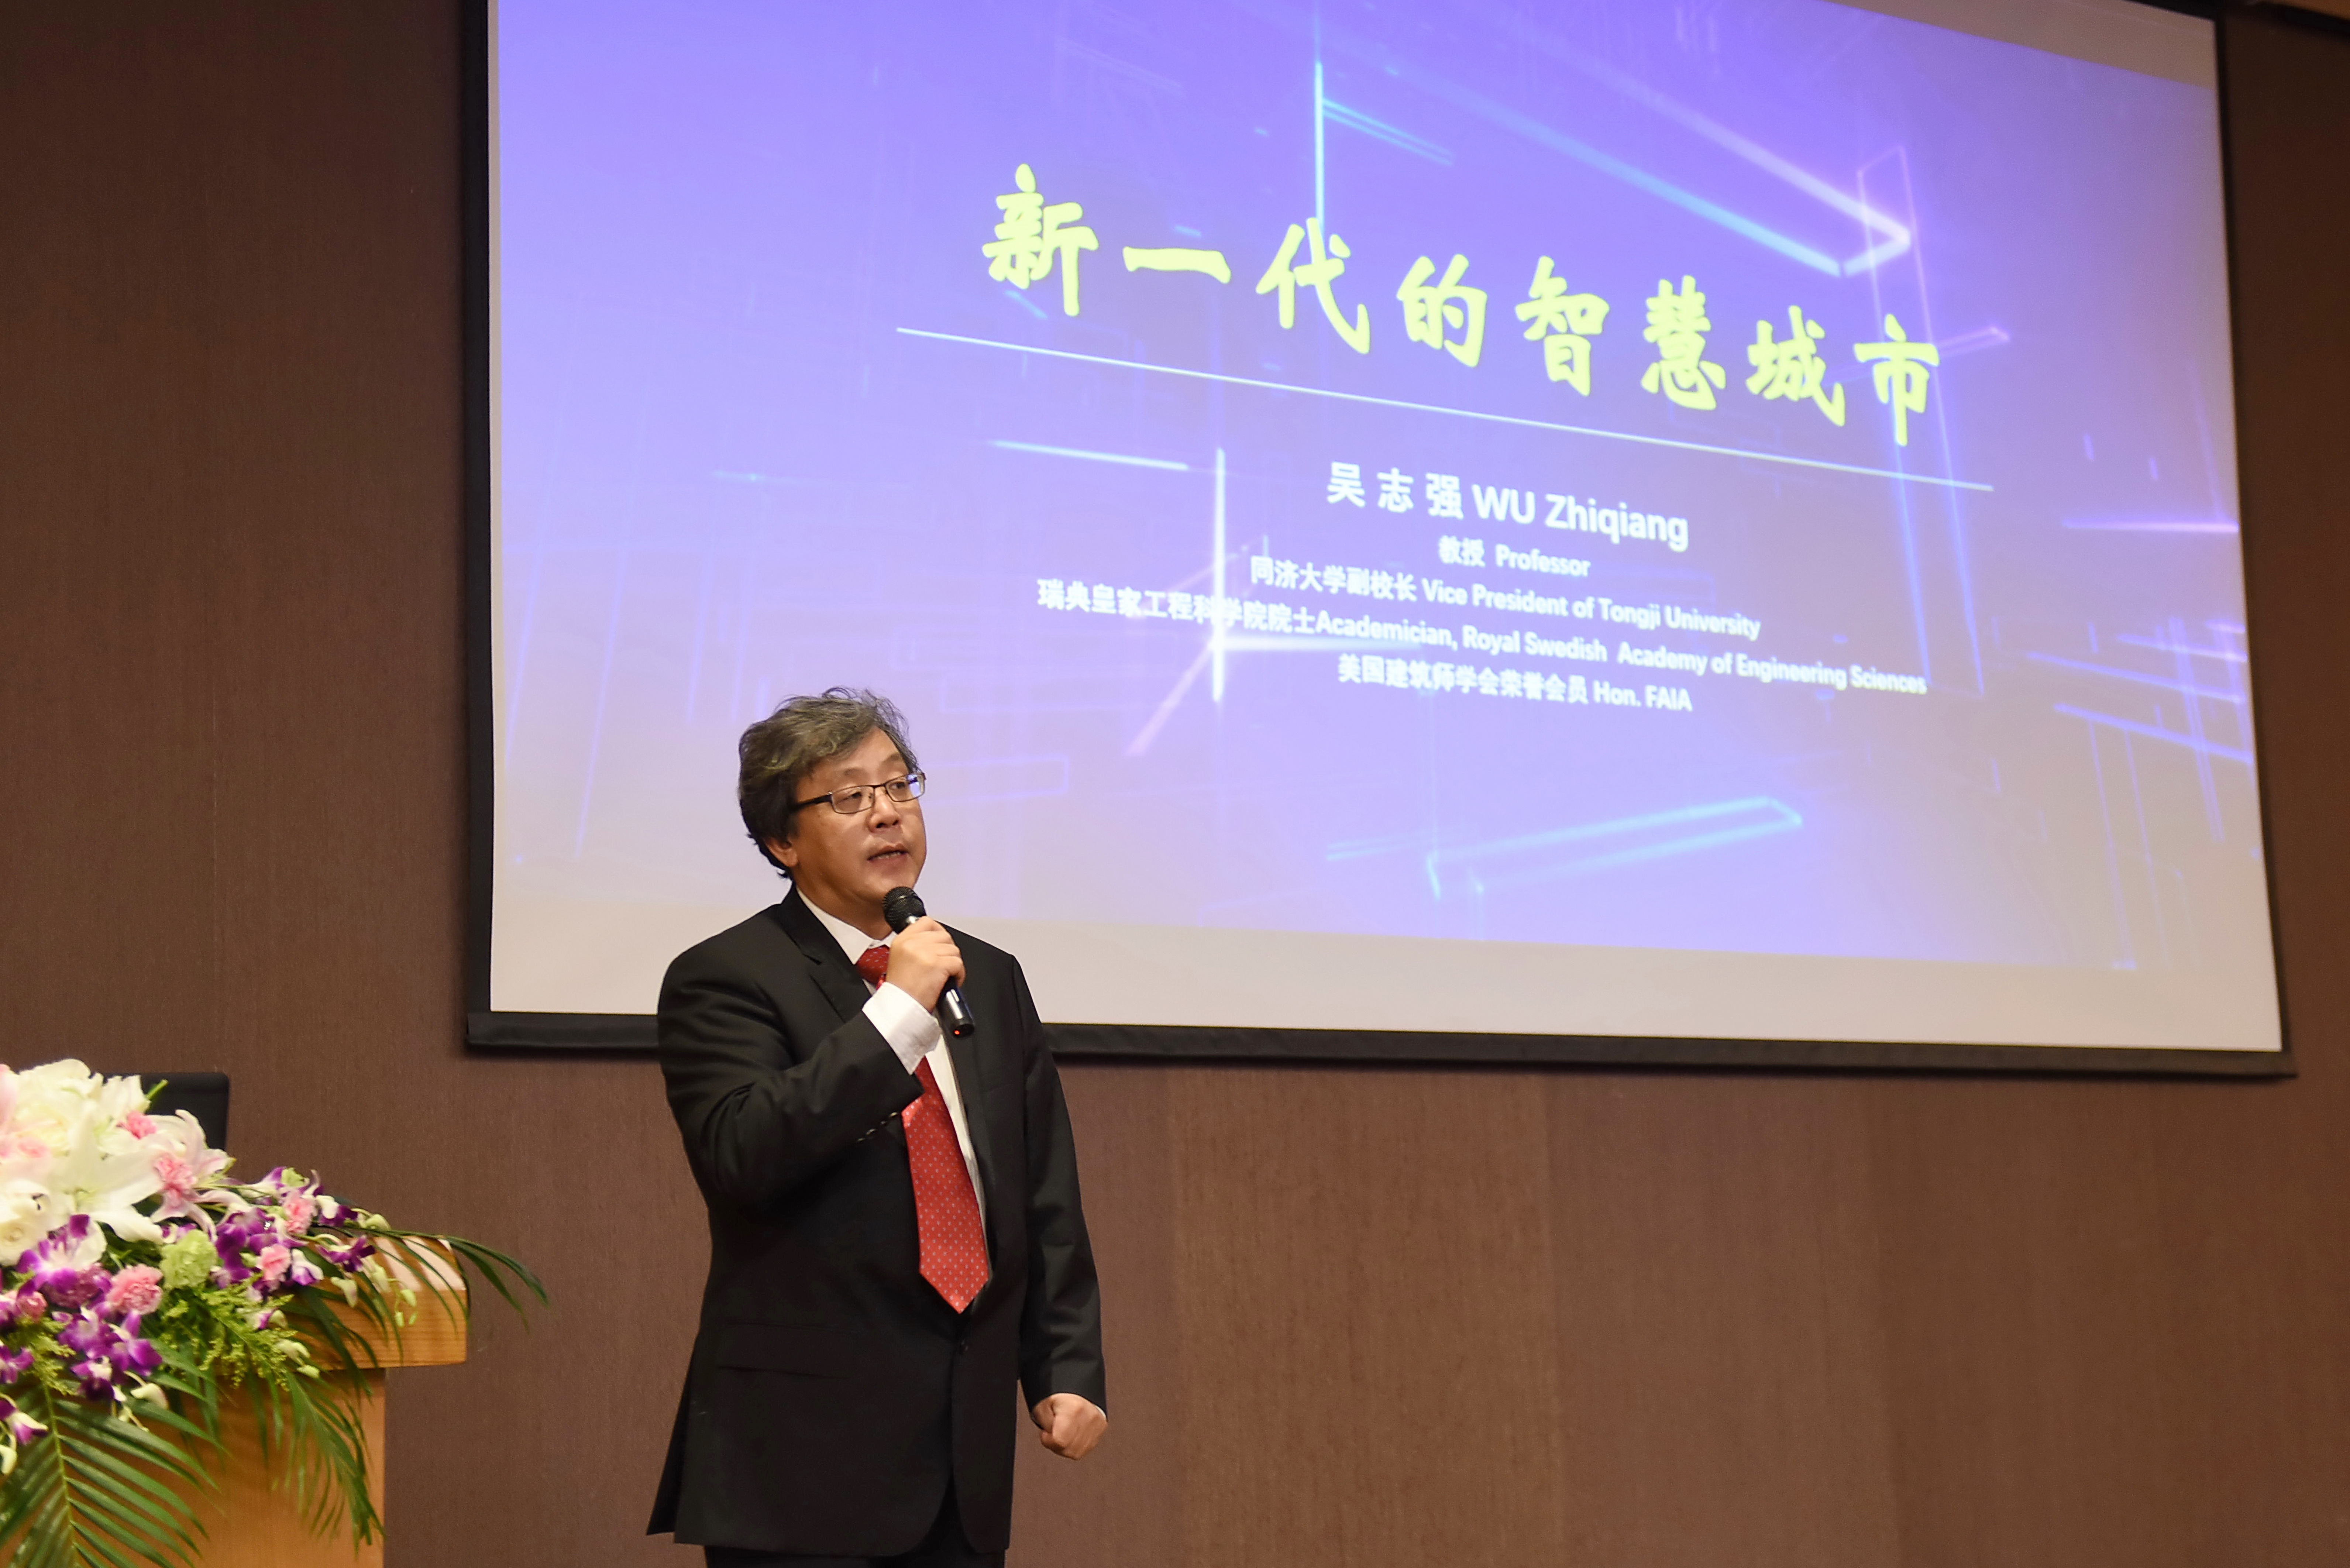 同济大学副校长吴志强教授发表演讲